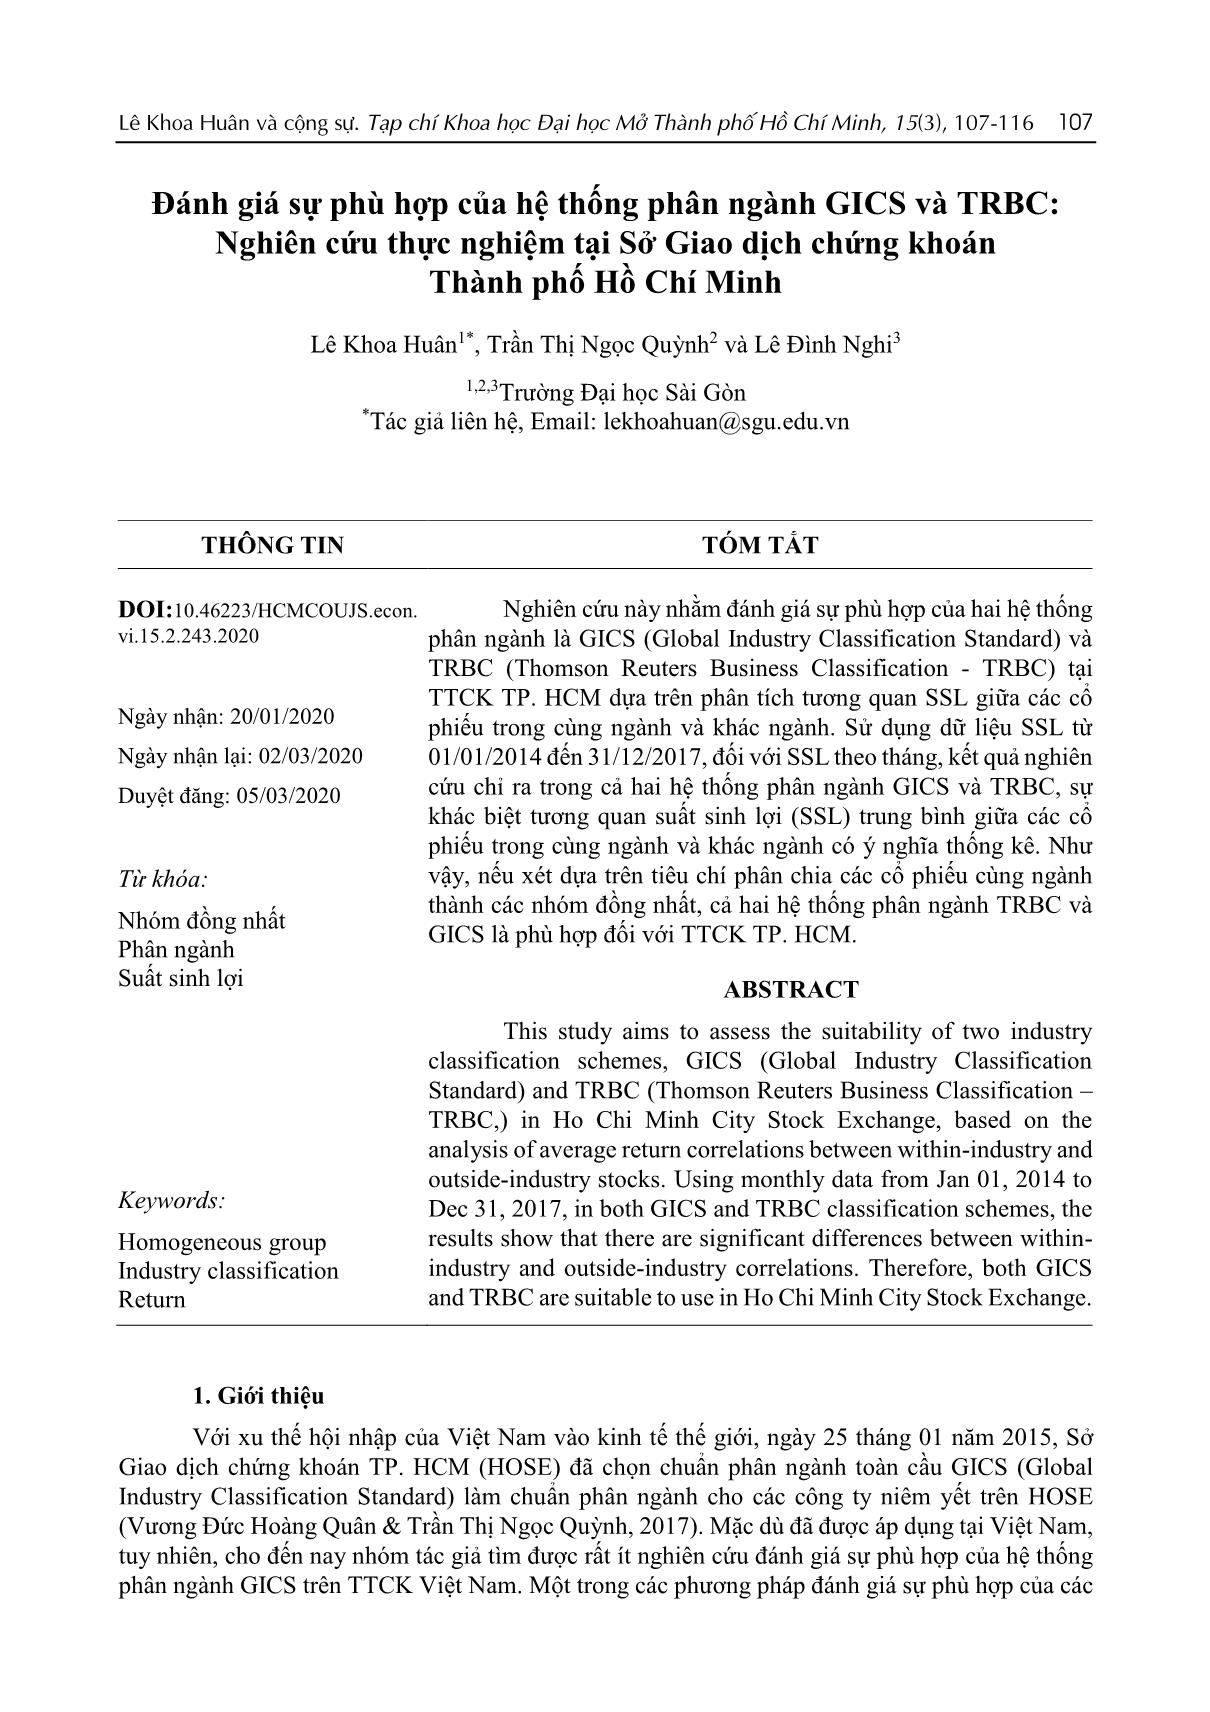 Đánh giá sự phù hợp của hệ thống phân ngành GICS và TRBC: Nghiên cứu thực nghiệm tại Sở Giao dịch chứng khoán Thành phố Hồ Chí Minh trang 1